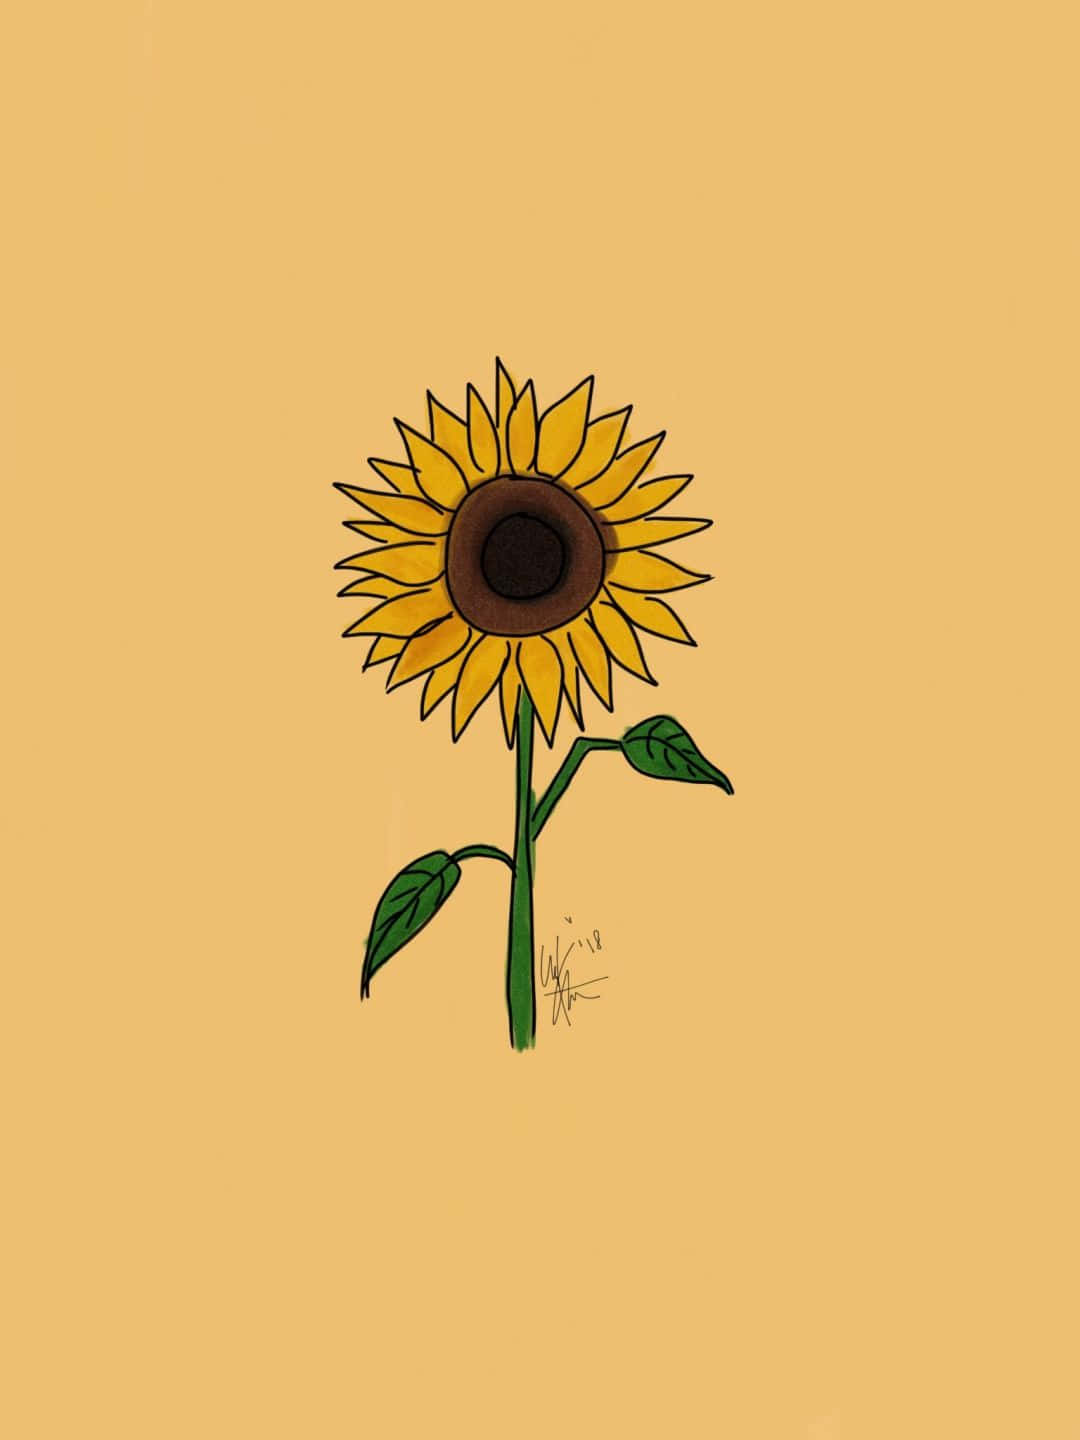 Erhellensie Ihren Tag Mit Einer Wunderschönen Gelben Sonnenblume. Wallpaper